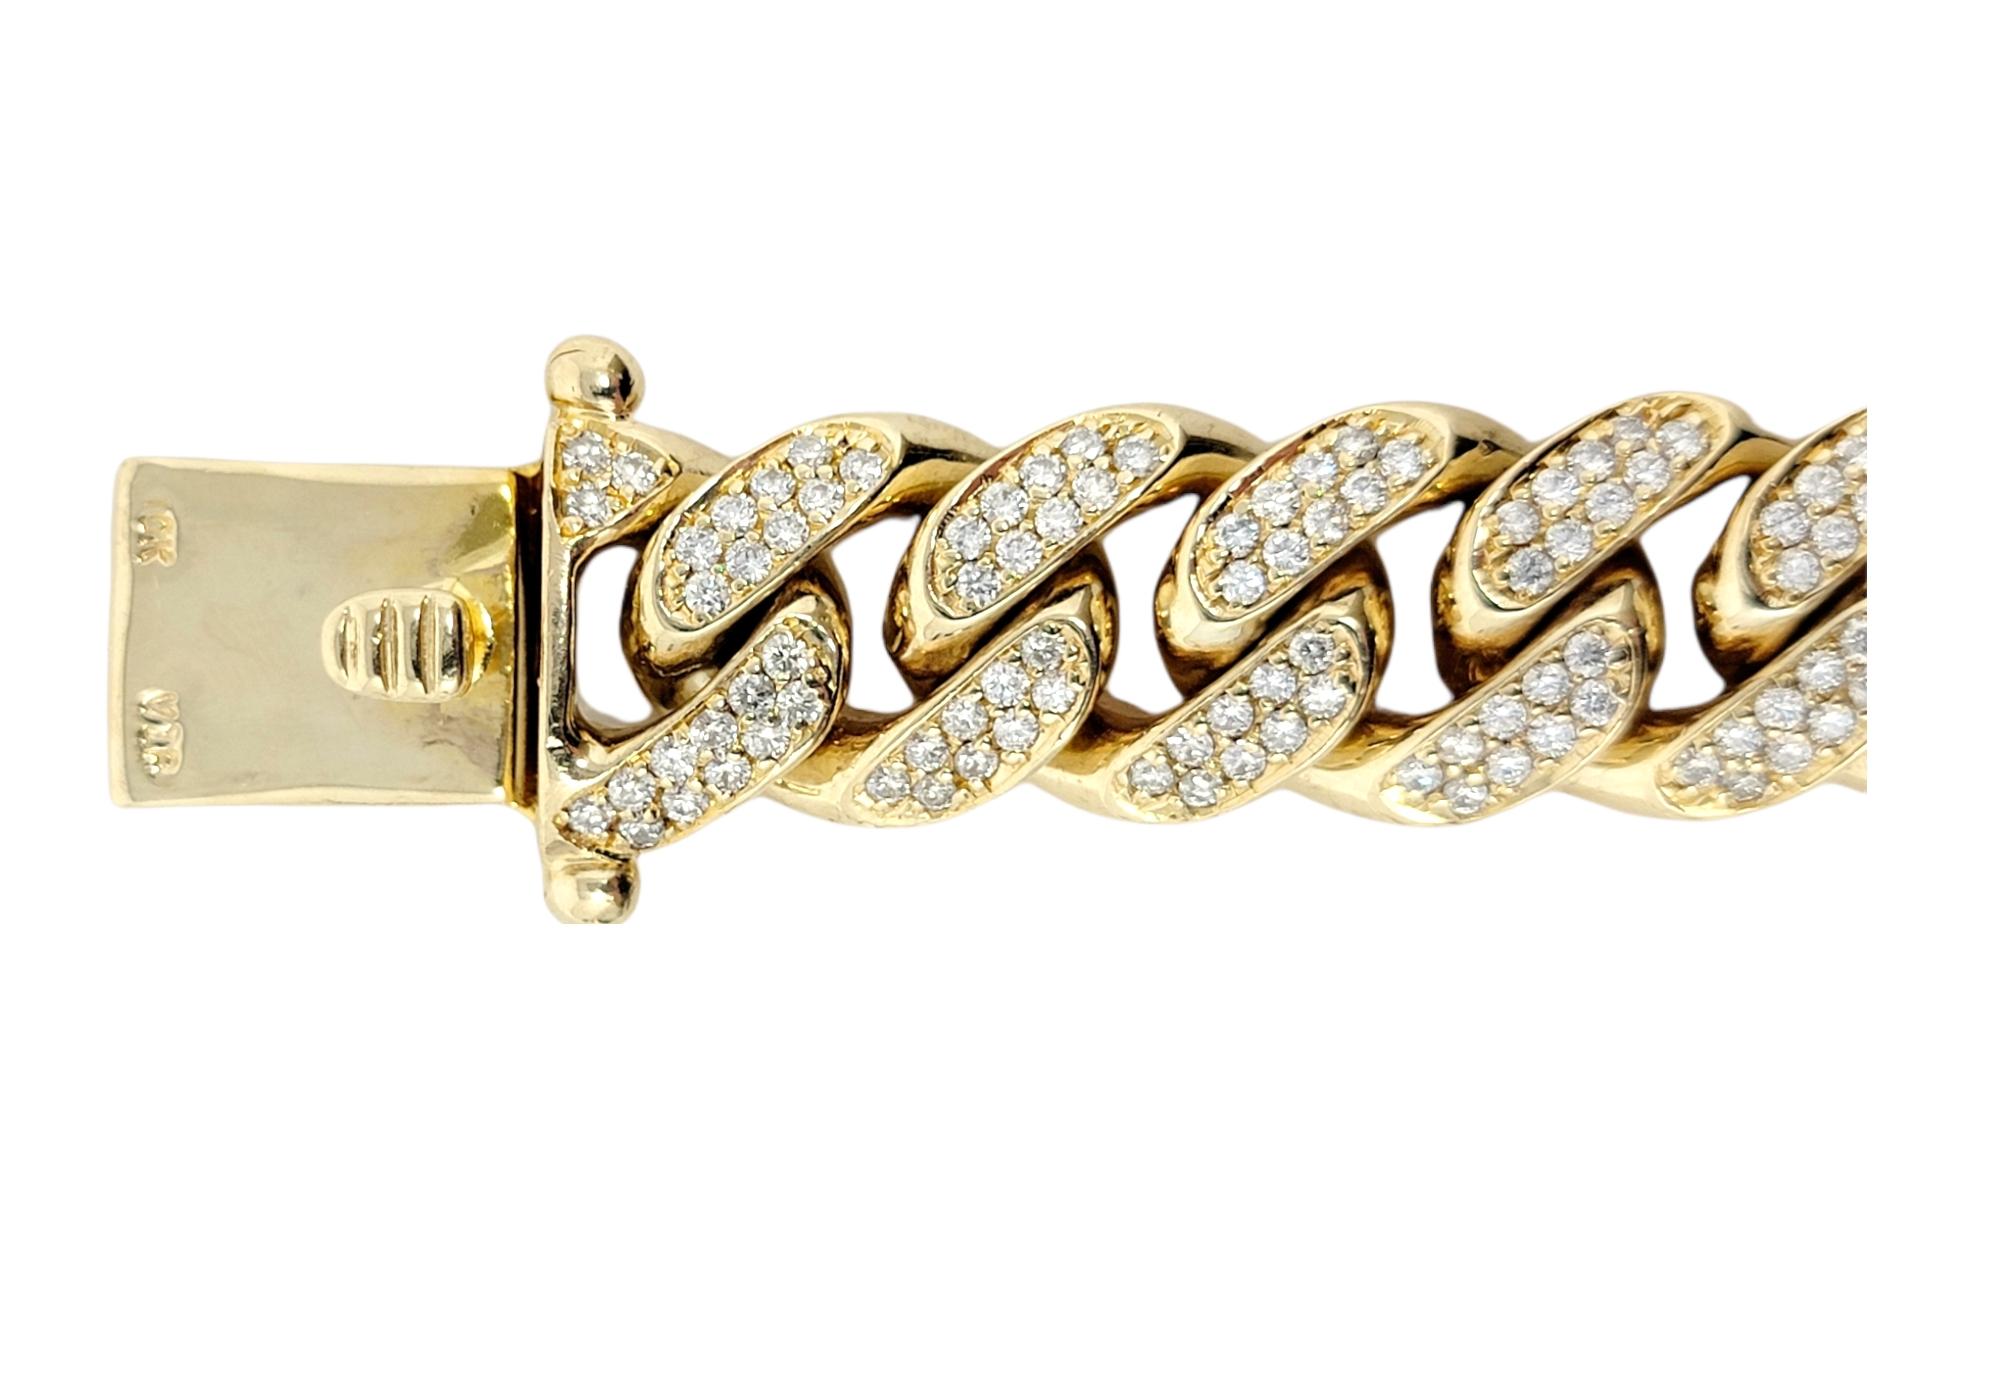 10 karat gold mens bracelet